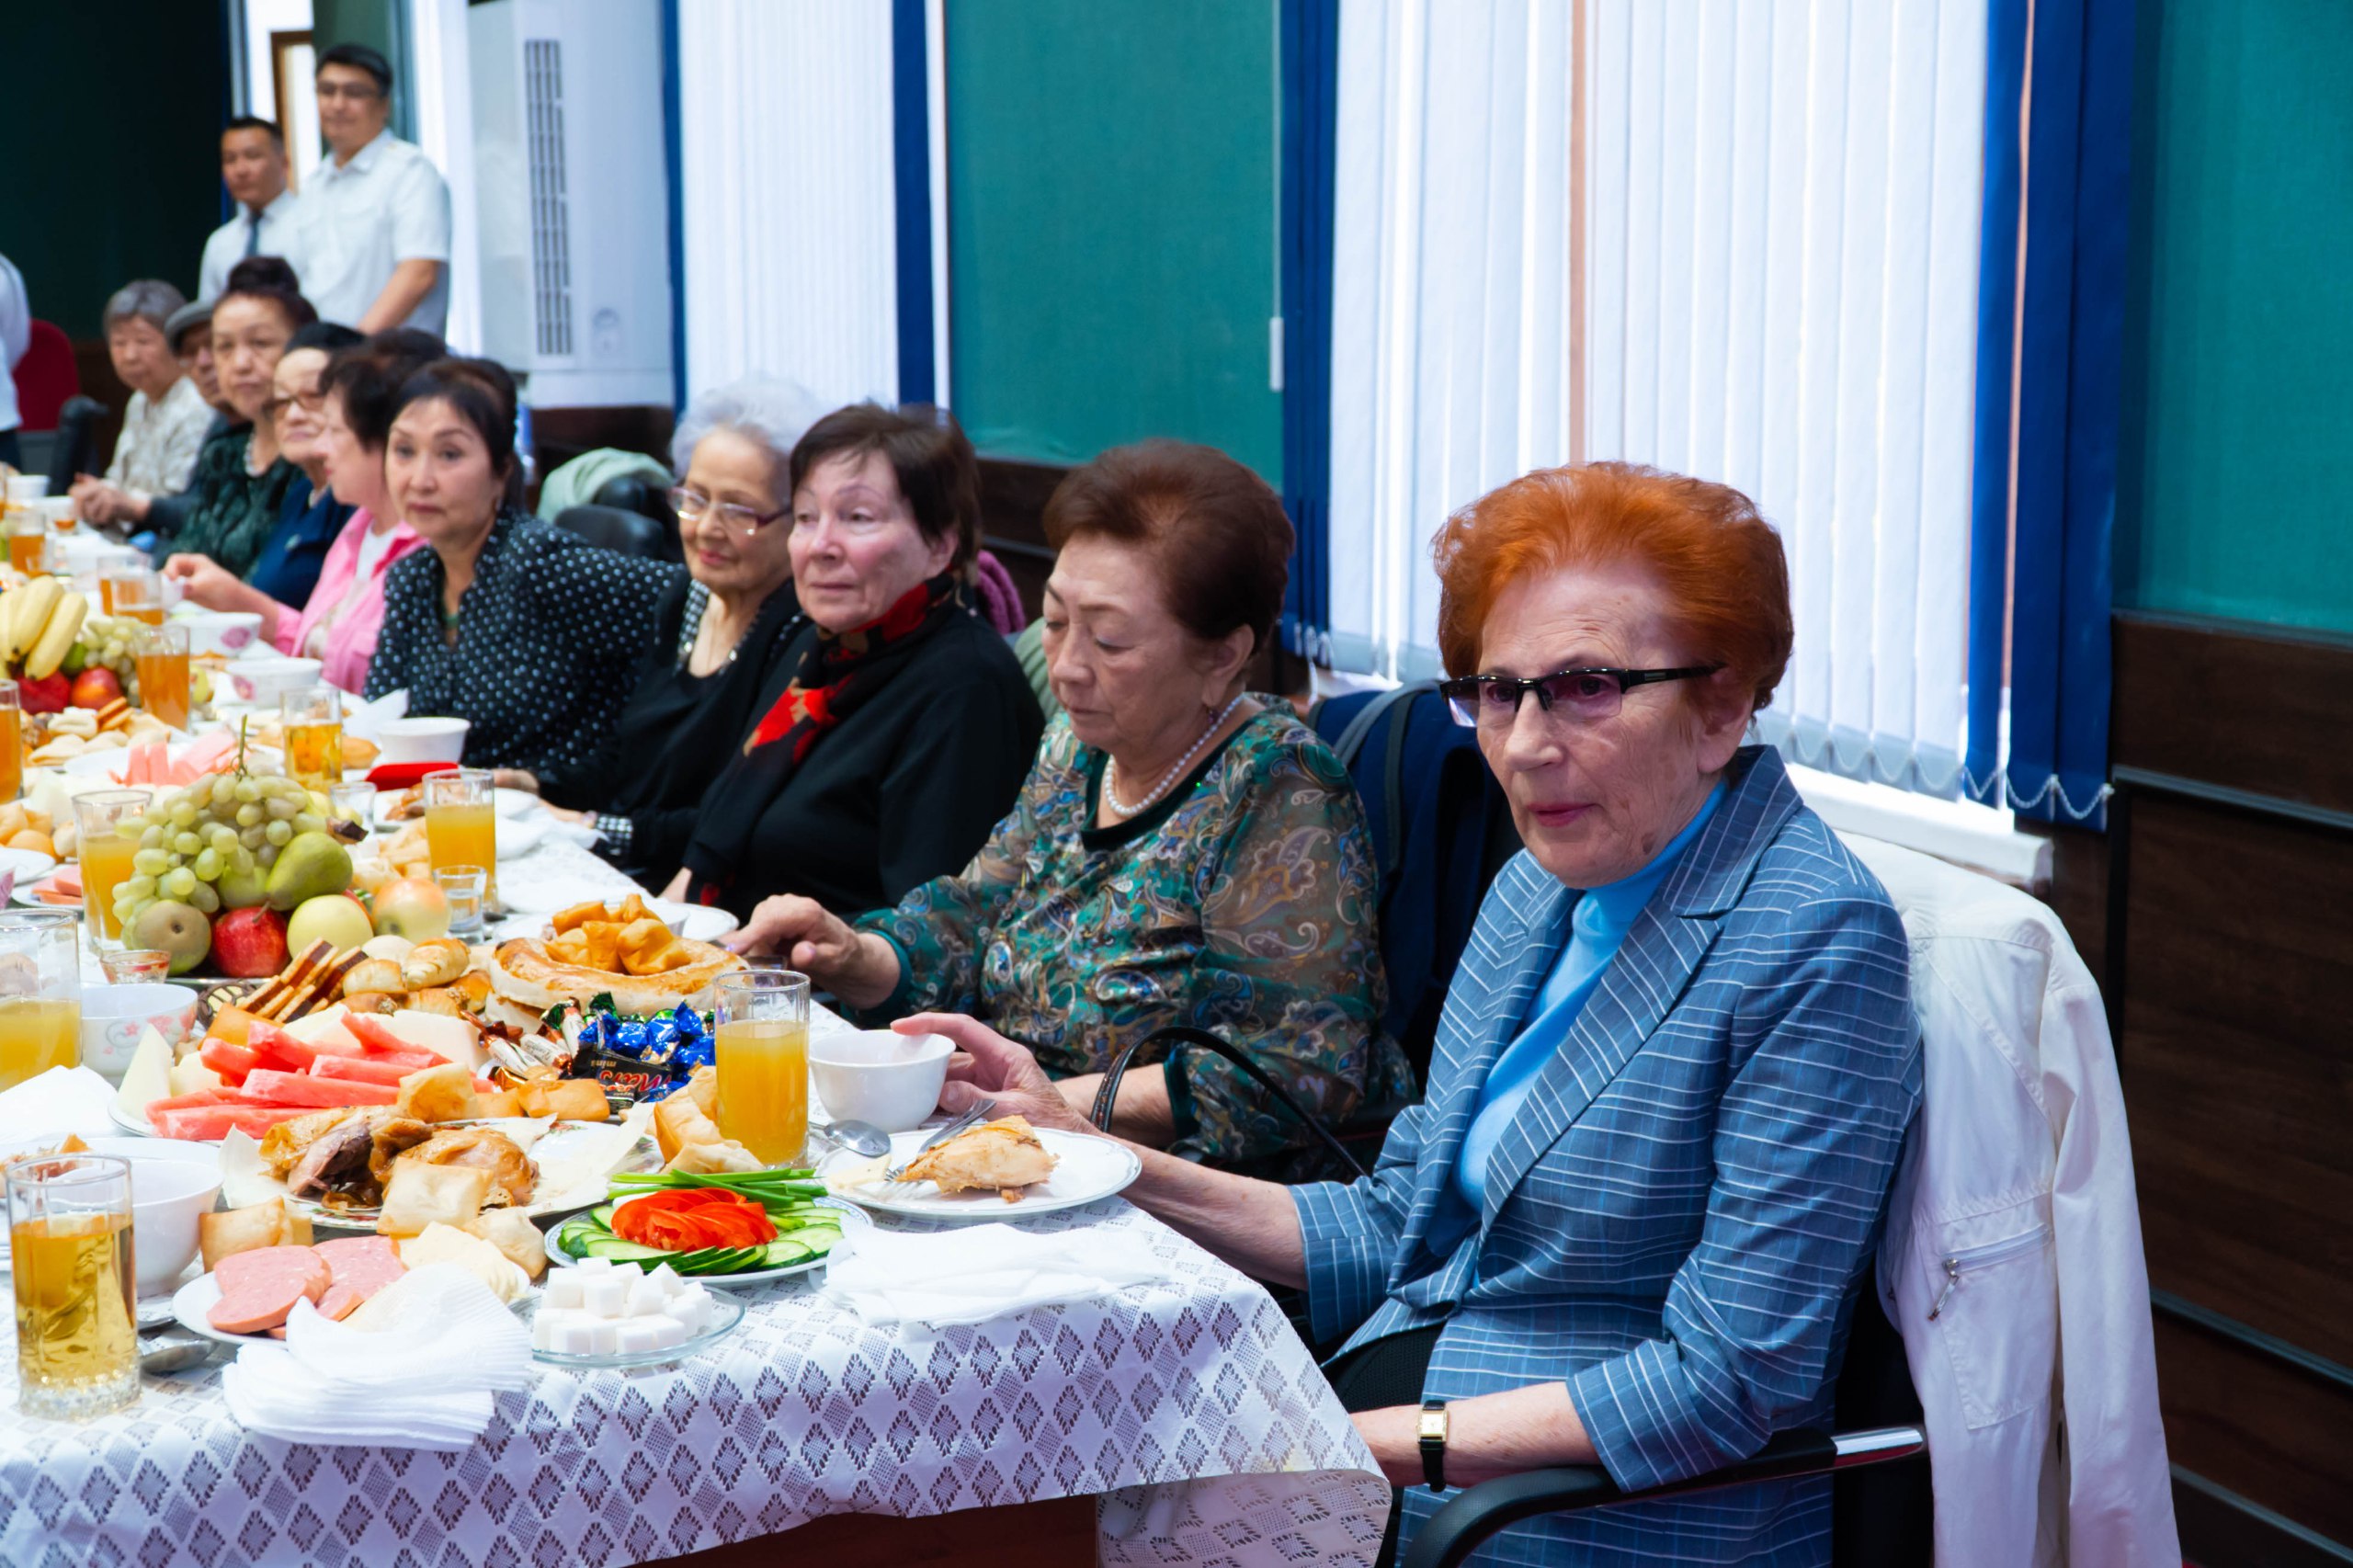 Сегодня в Международный день пожилых людей сотрудники Минюста поздравили ветеранов юстиции и пенсионеров праздничным концертом